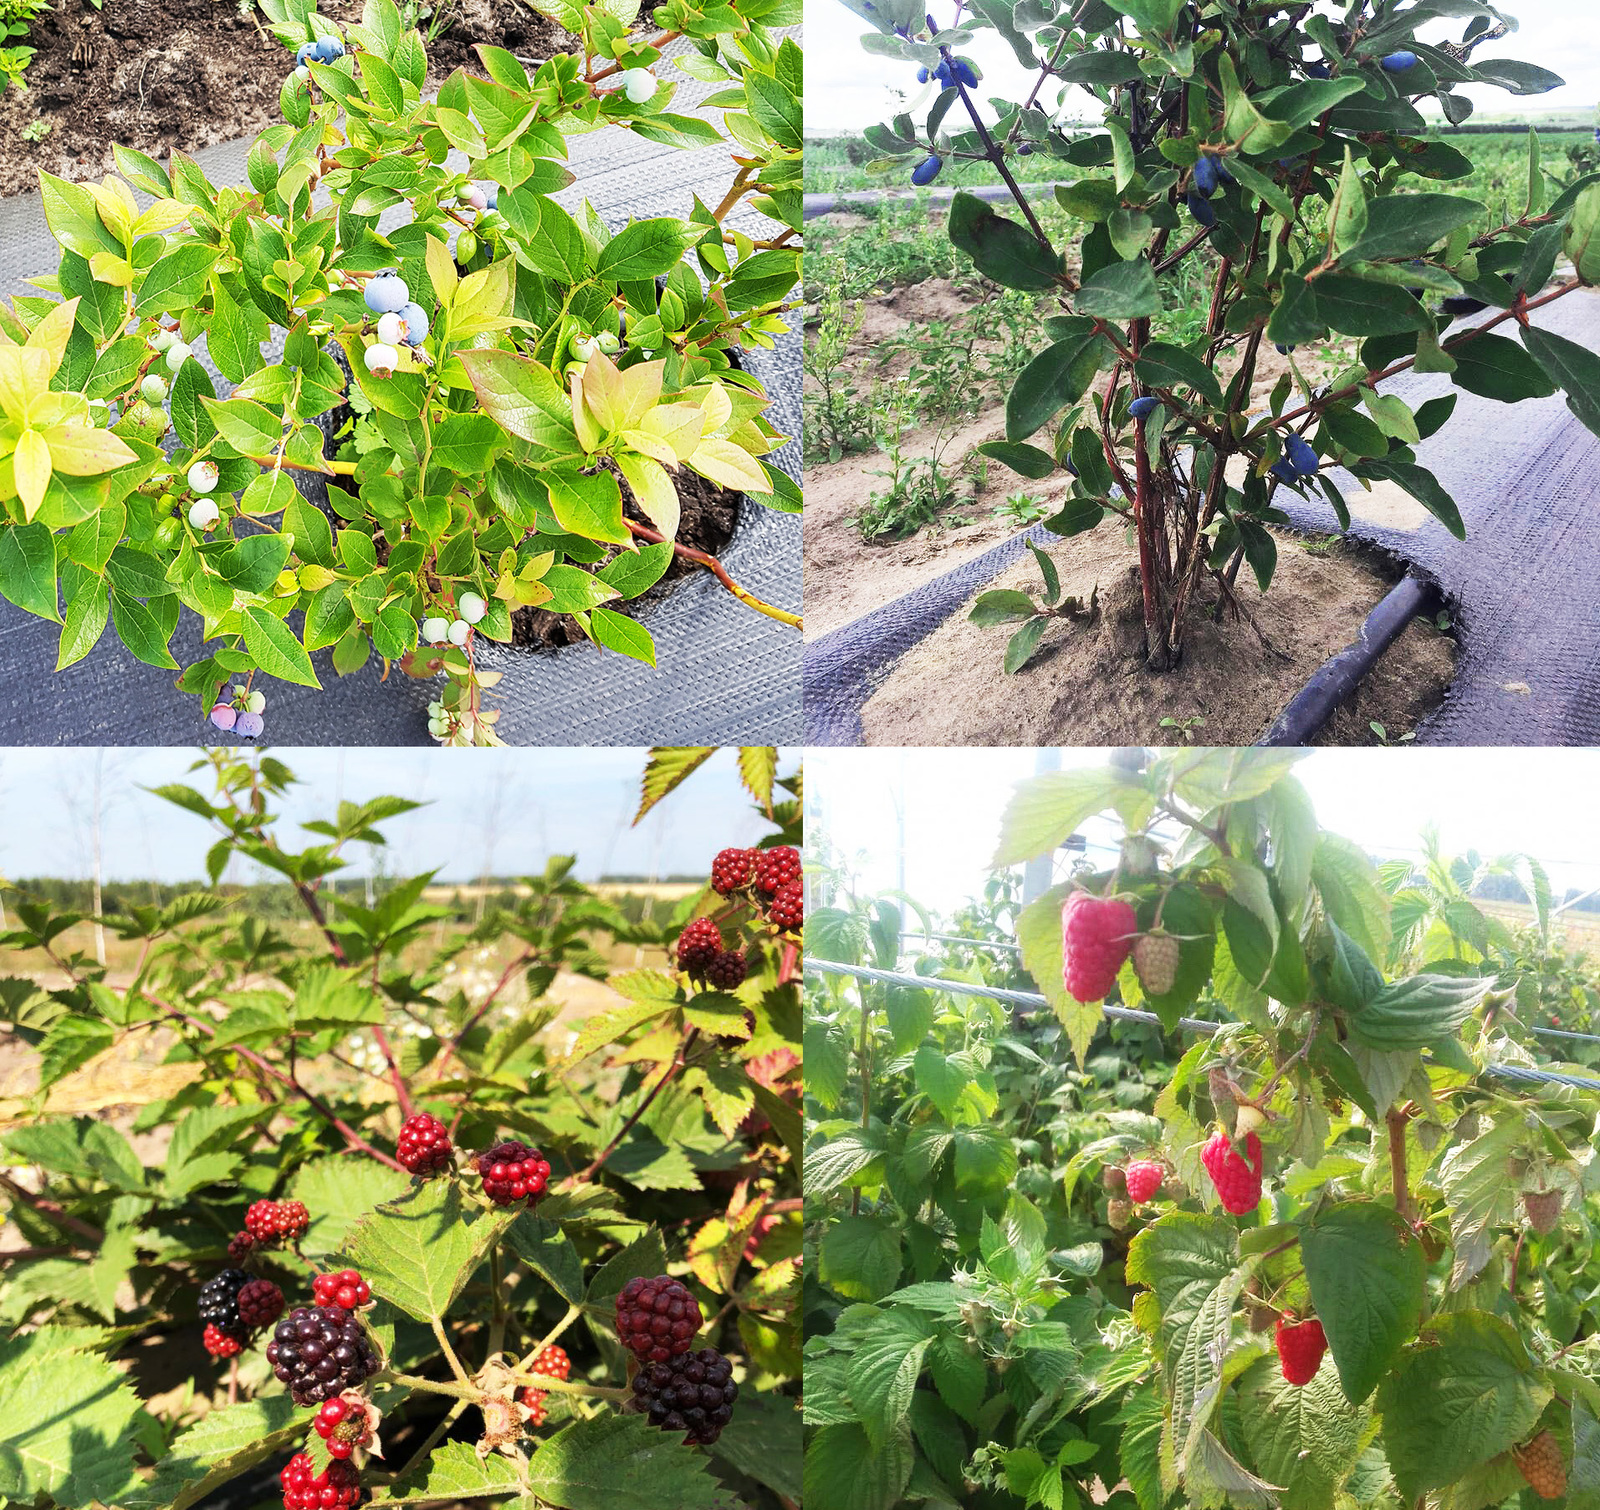 Как выращивают ягоды чтобы, урожай, материал, выращивается, необходимо, голубику, сделано, который, плодоношения, плодоносить, насаждения, можно, ягода, ягоды, вручную, самых, меньше, ягоду, только, лучшие